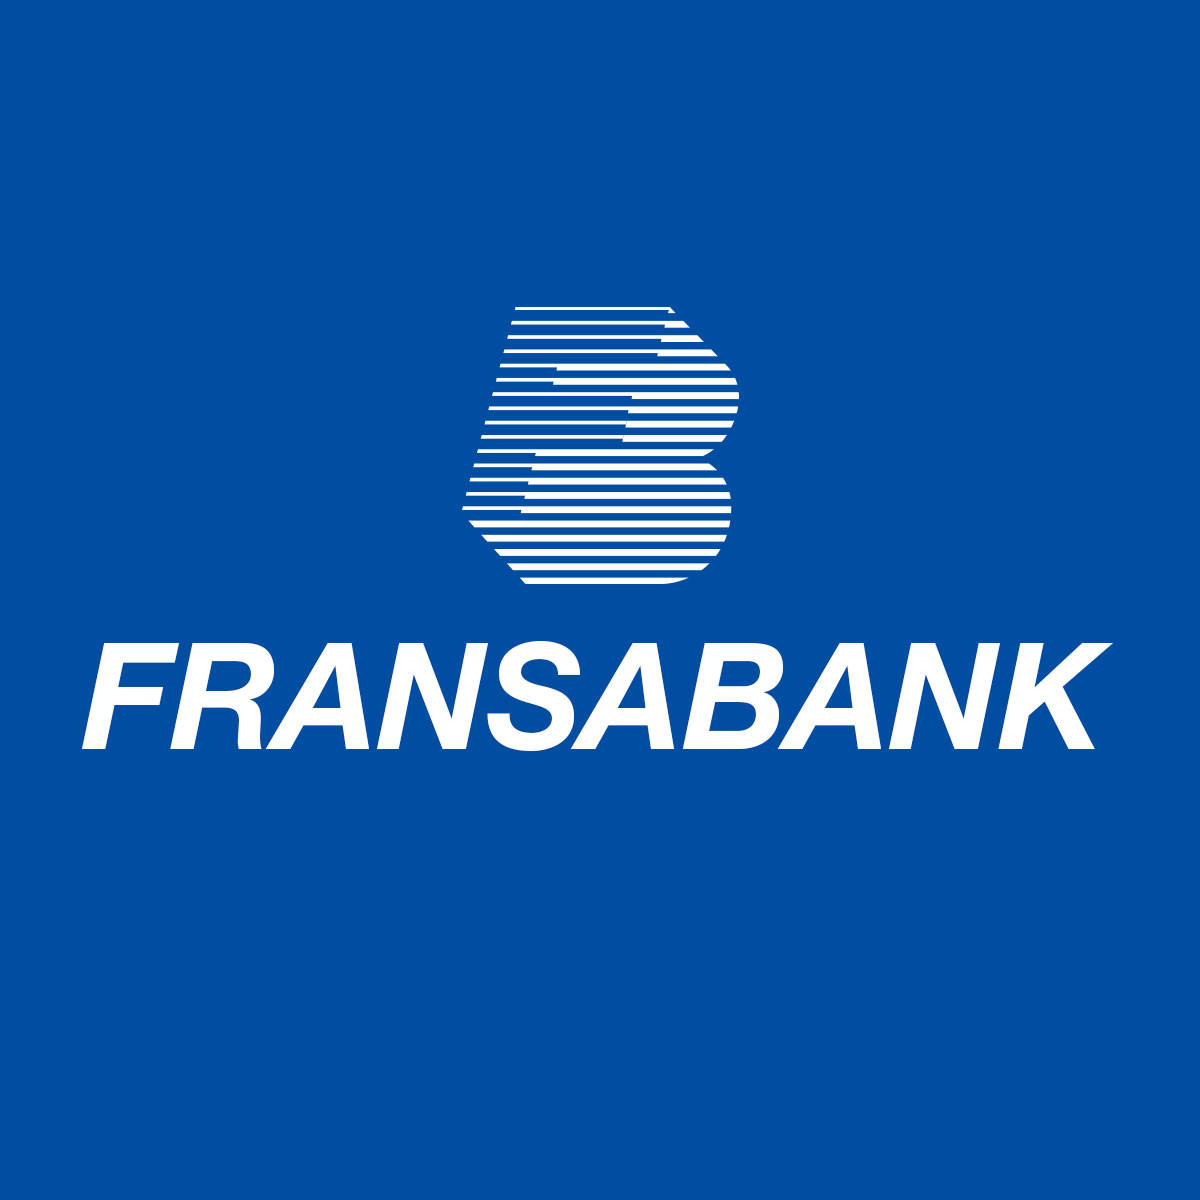 fransabank.png